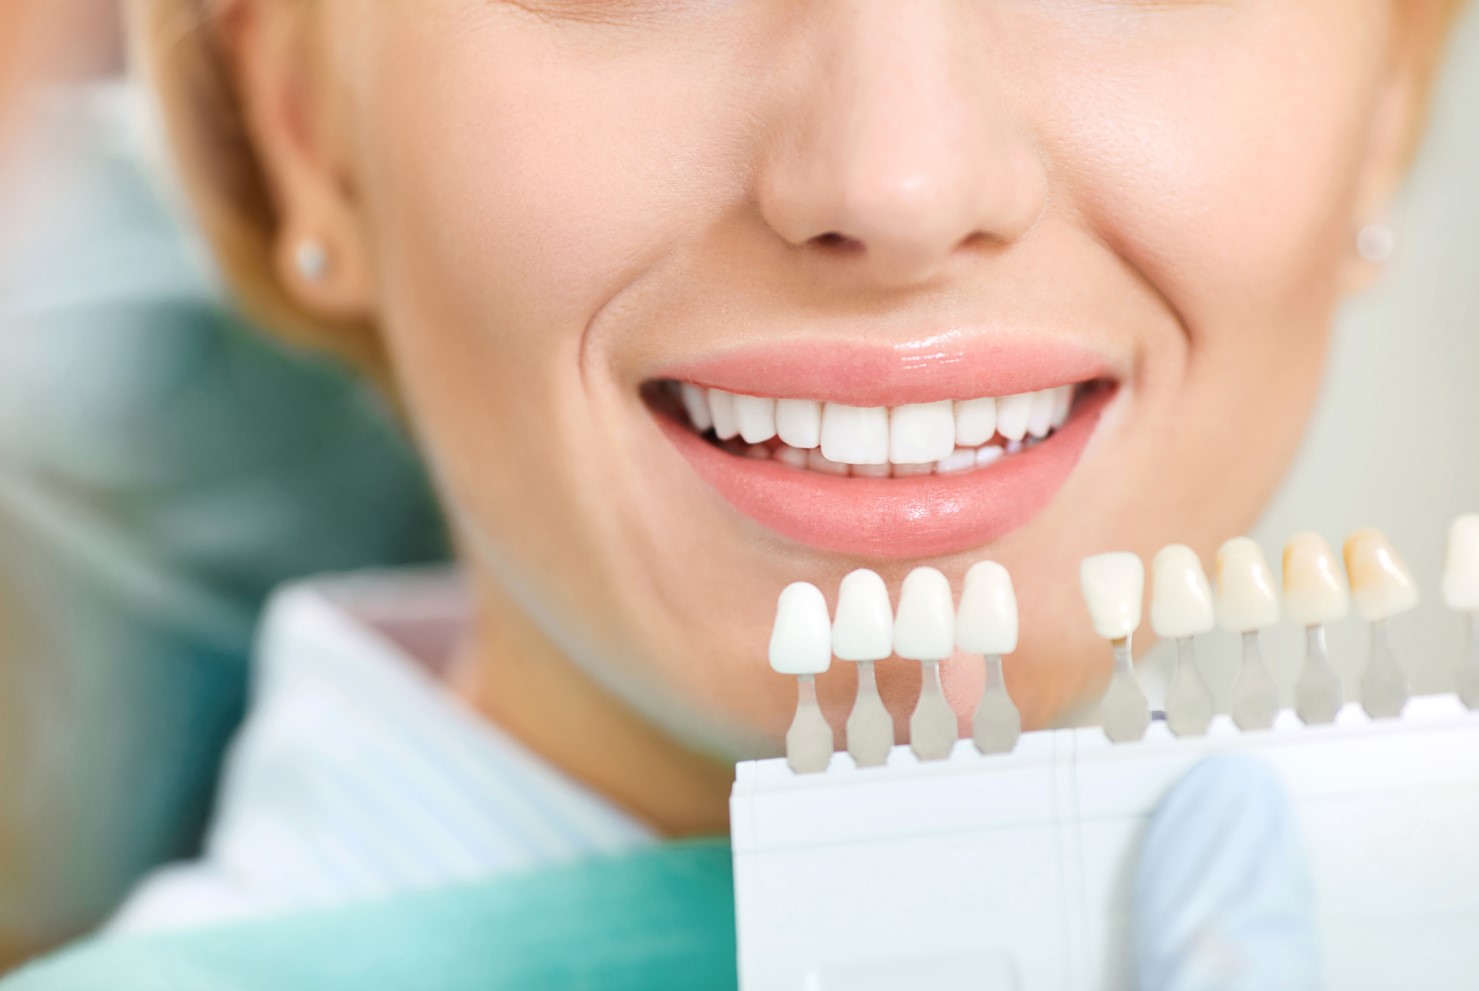 Estética dental recomendada para blanquear los dientes